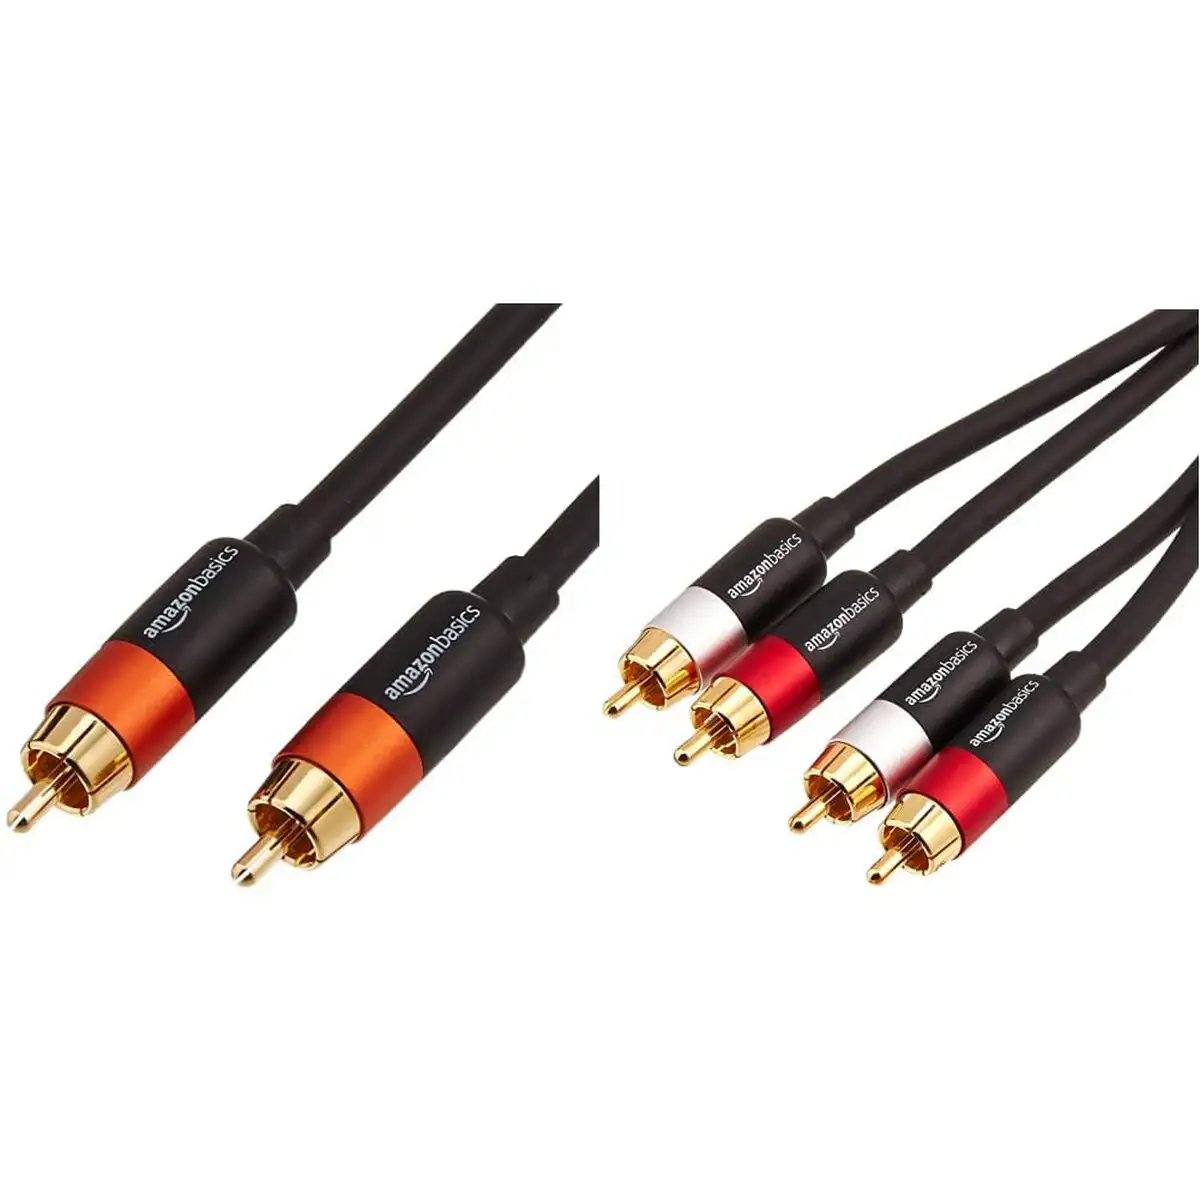 Cable audio amazon basics reconditionne a _5635. Entrez dans DIAYTAR SENEGAL - Où Chaque Détail Compte. Explorez notre boutique en ligne pour trouver des produits de haute qualité, soigneusement choisis pour répondre à vos besoins et vos désirs.